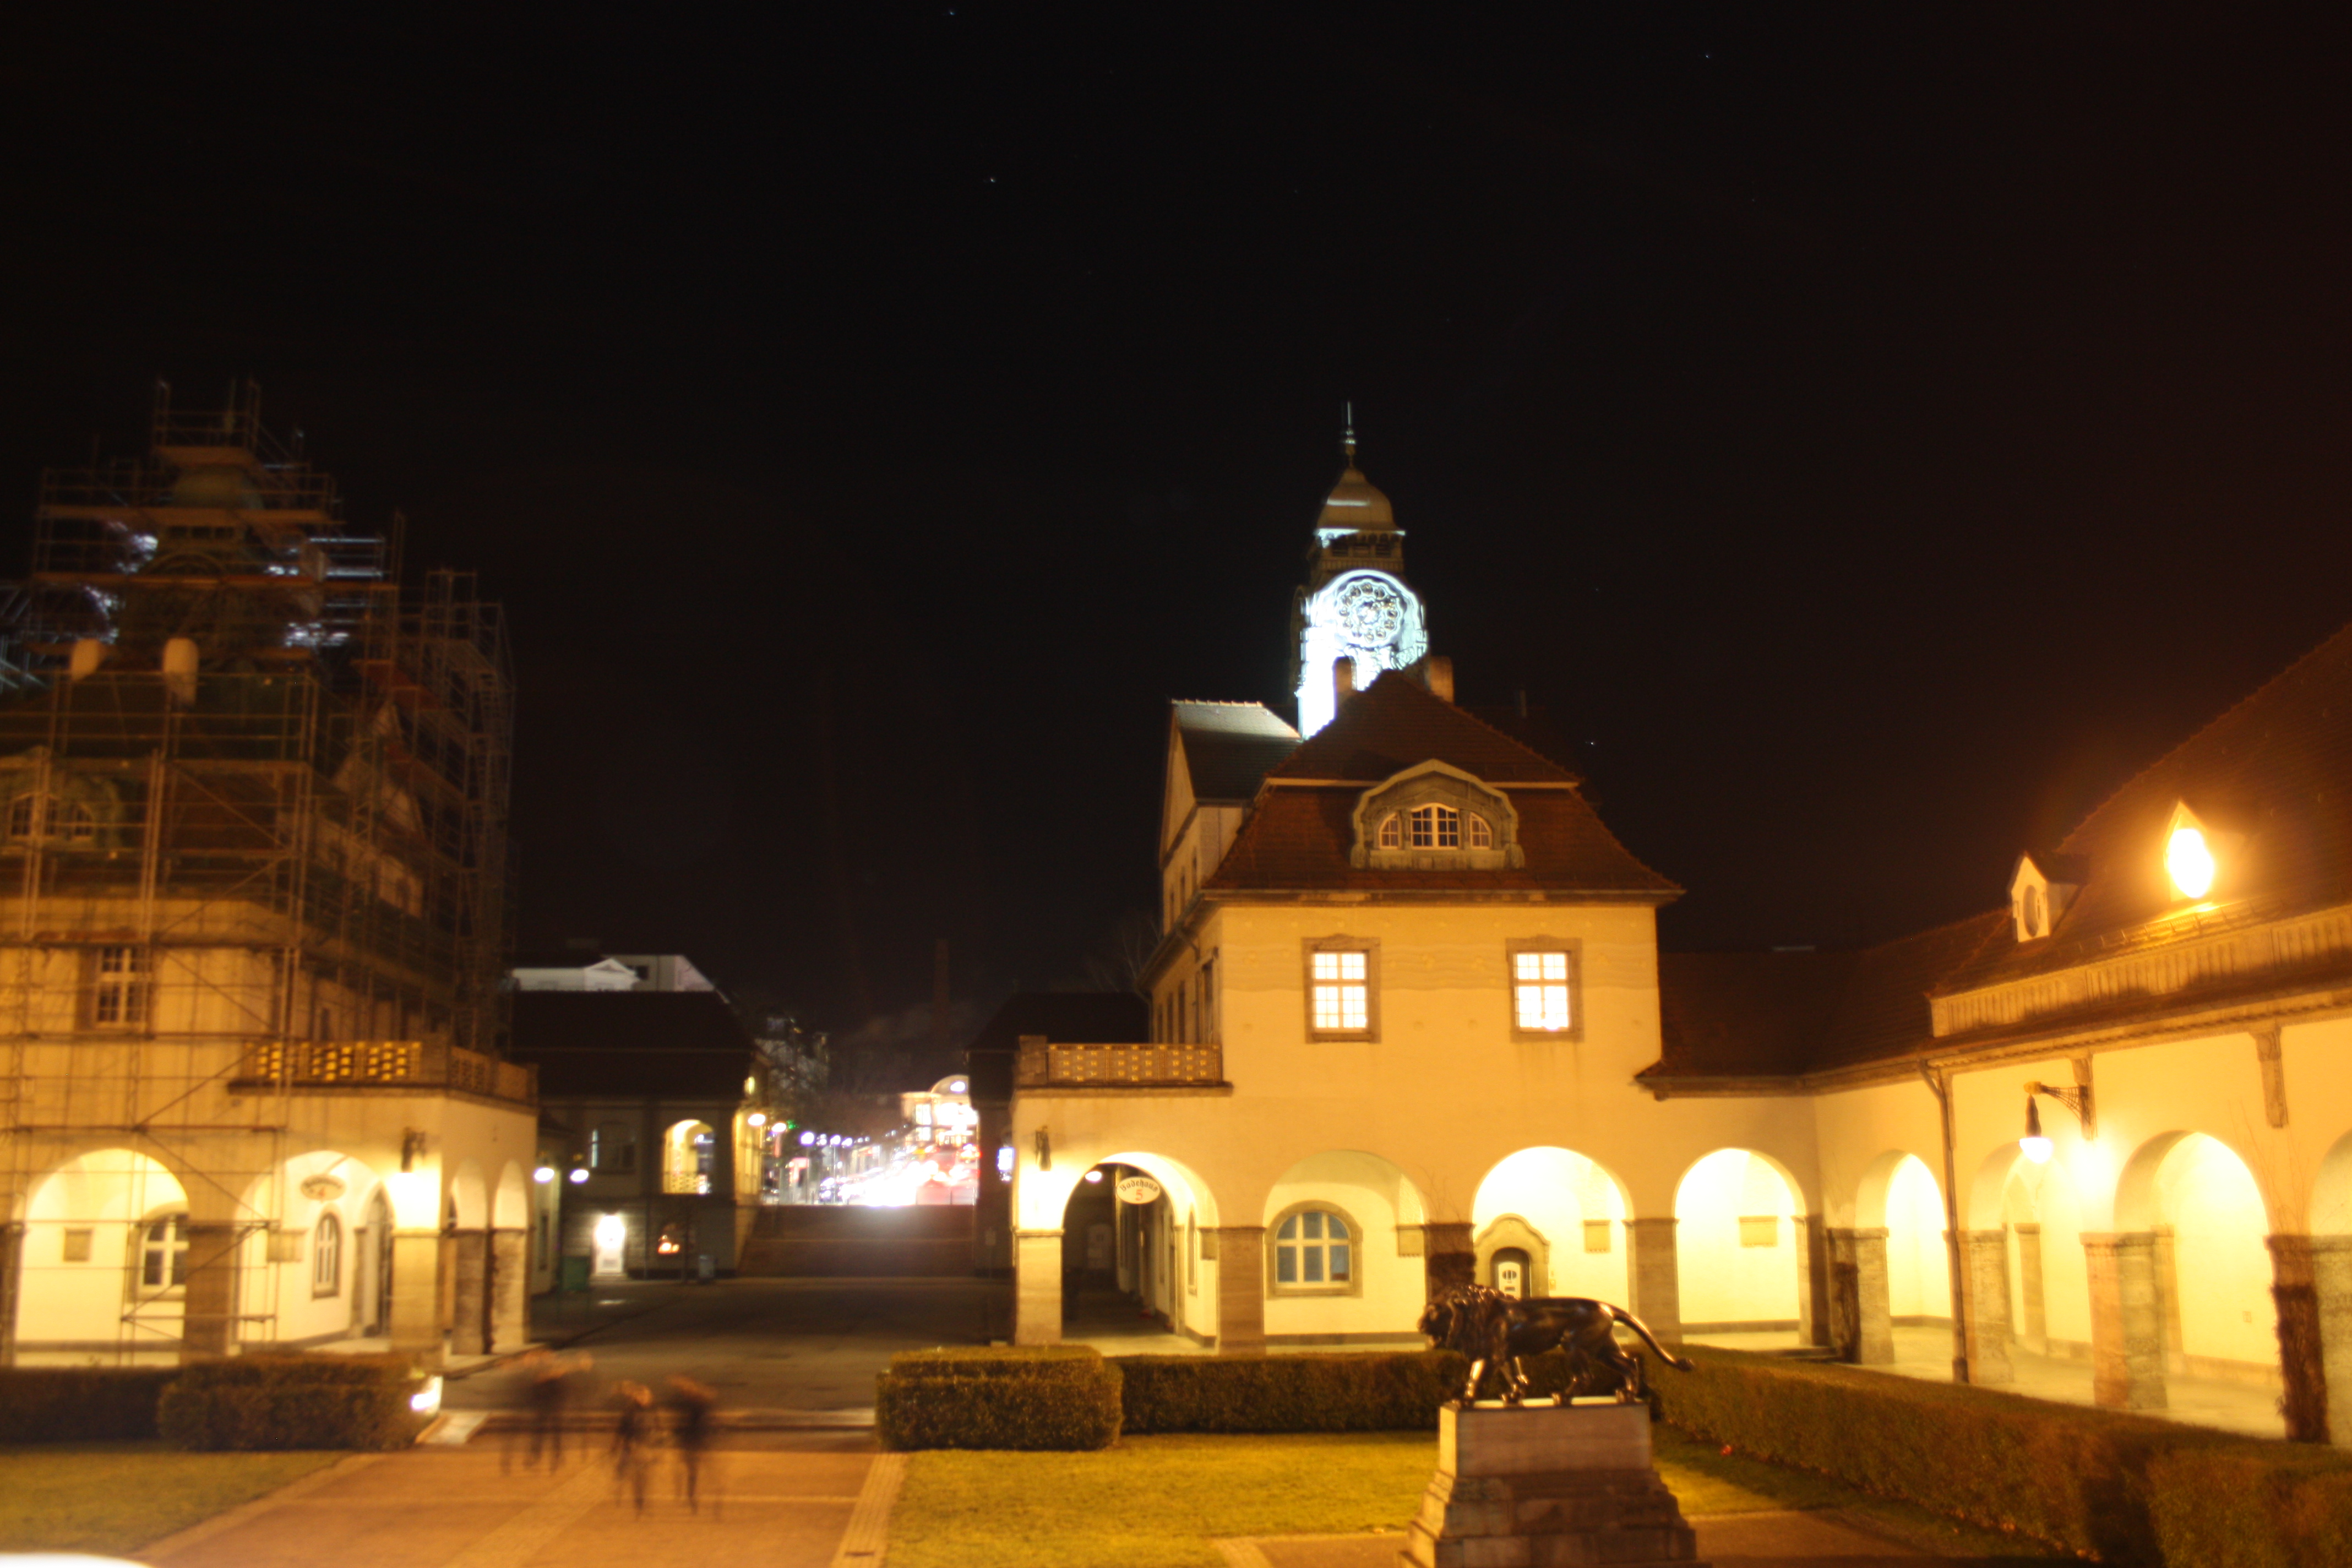 Der Sprudelhof von Bad Nauheim bei Nacht.
